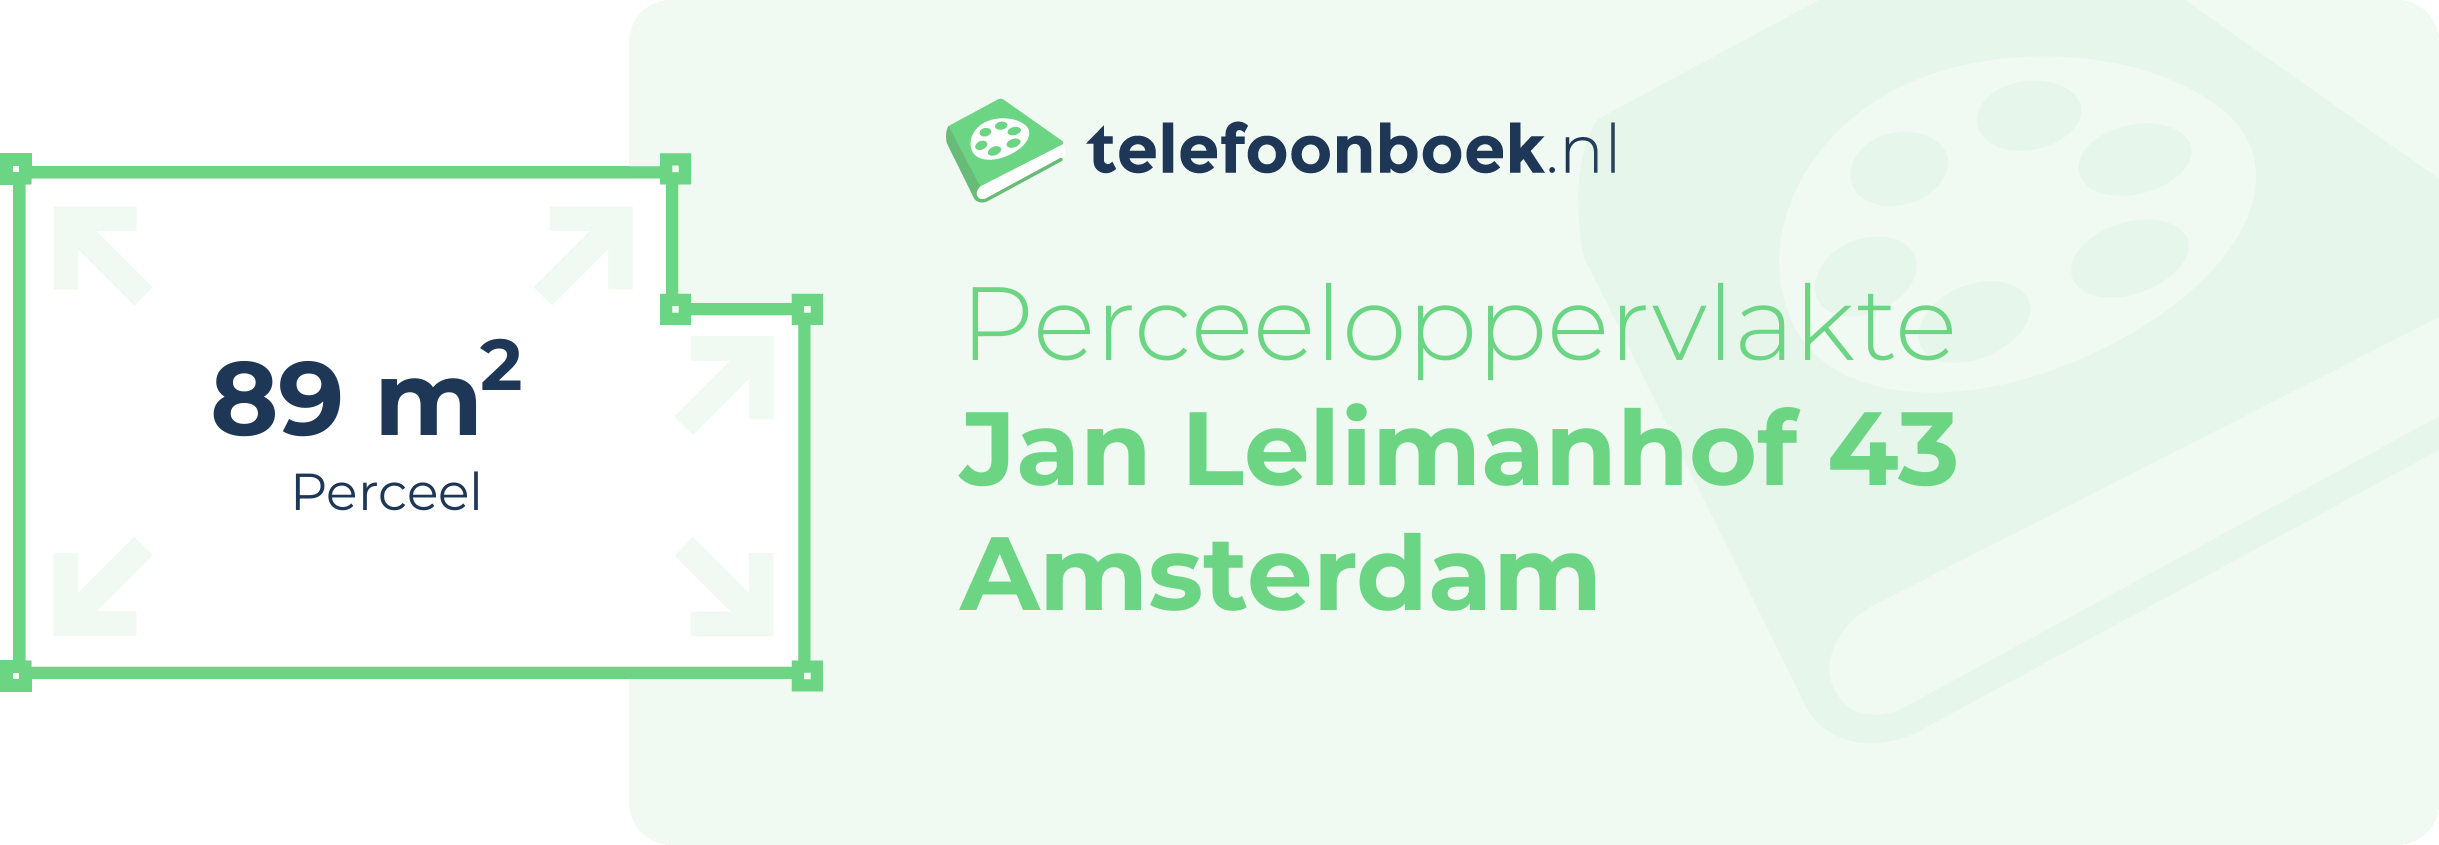 Perceeloppervlakte Jan Lelimanhof 43 Amsterdam